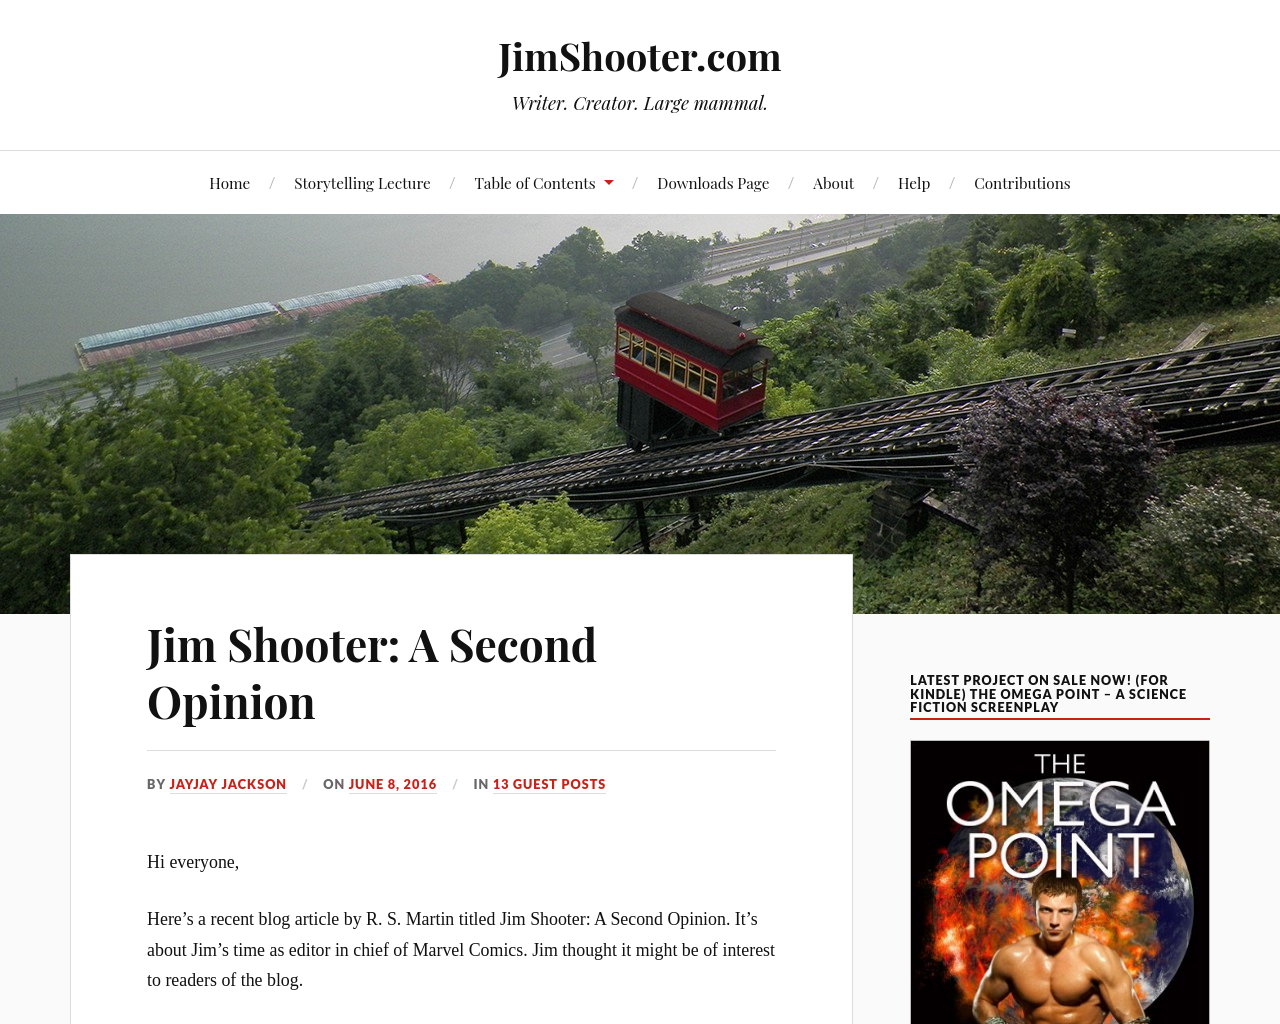 jimshooter.com